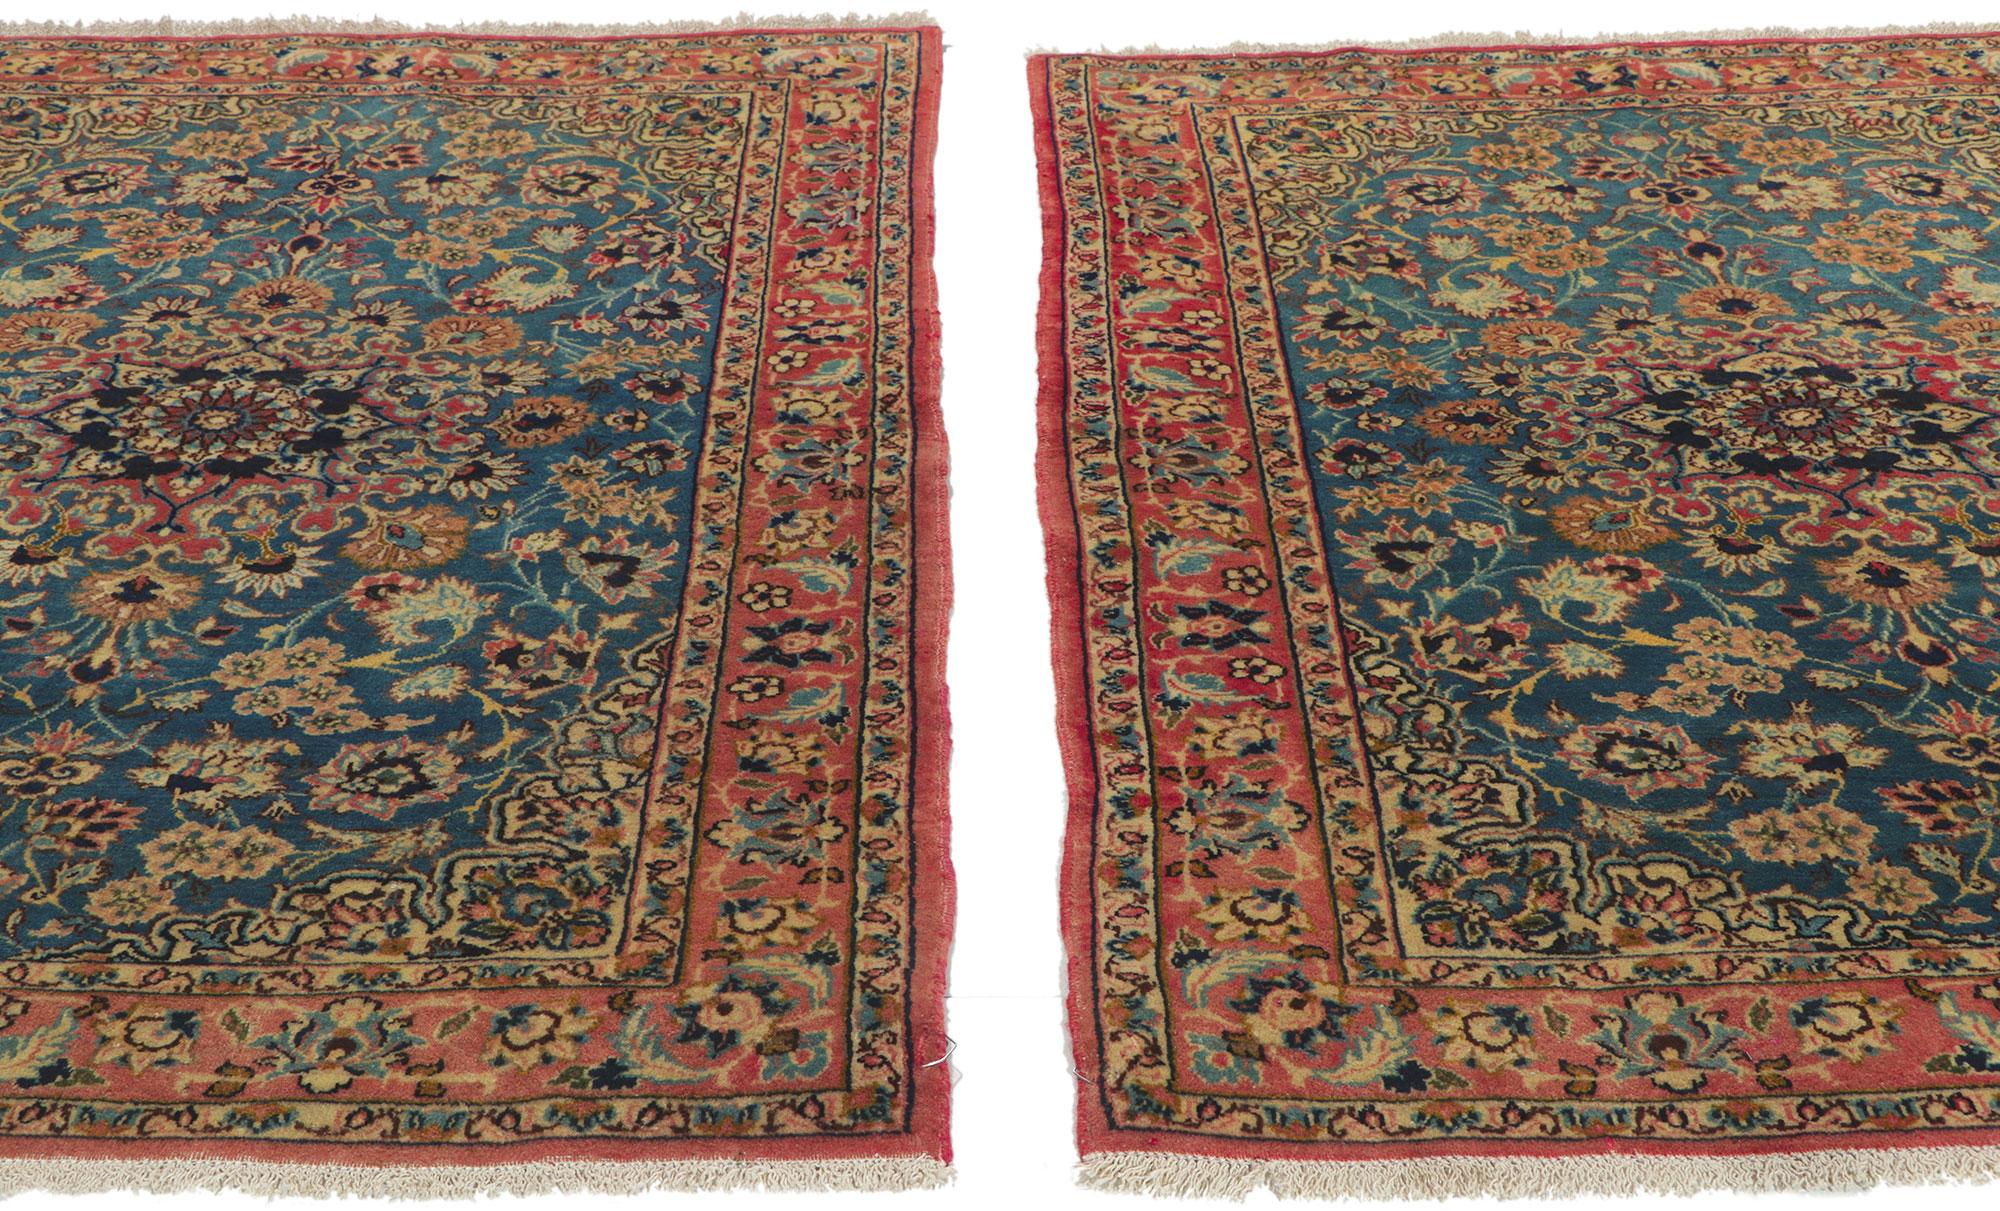 Paar passende persische Isfahan-Teppiche im Vintage-Stil
Dieses Paar handgeknüpfter persischer Isfahan-Teppiche aus Wolle im Vintage-Stil besticht durch seinen zeitlosen Stil, seine unglaublichen Details und seine Textur. Das auffällige botanische